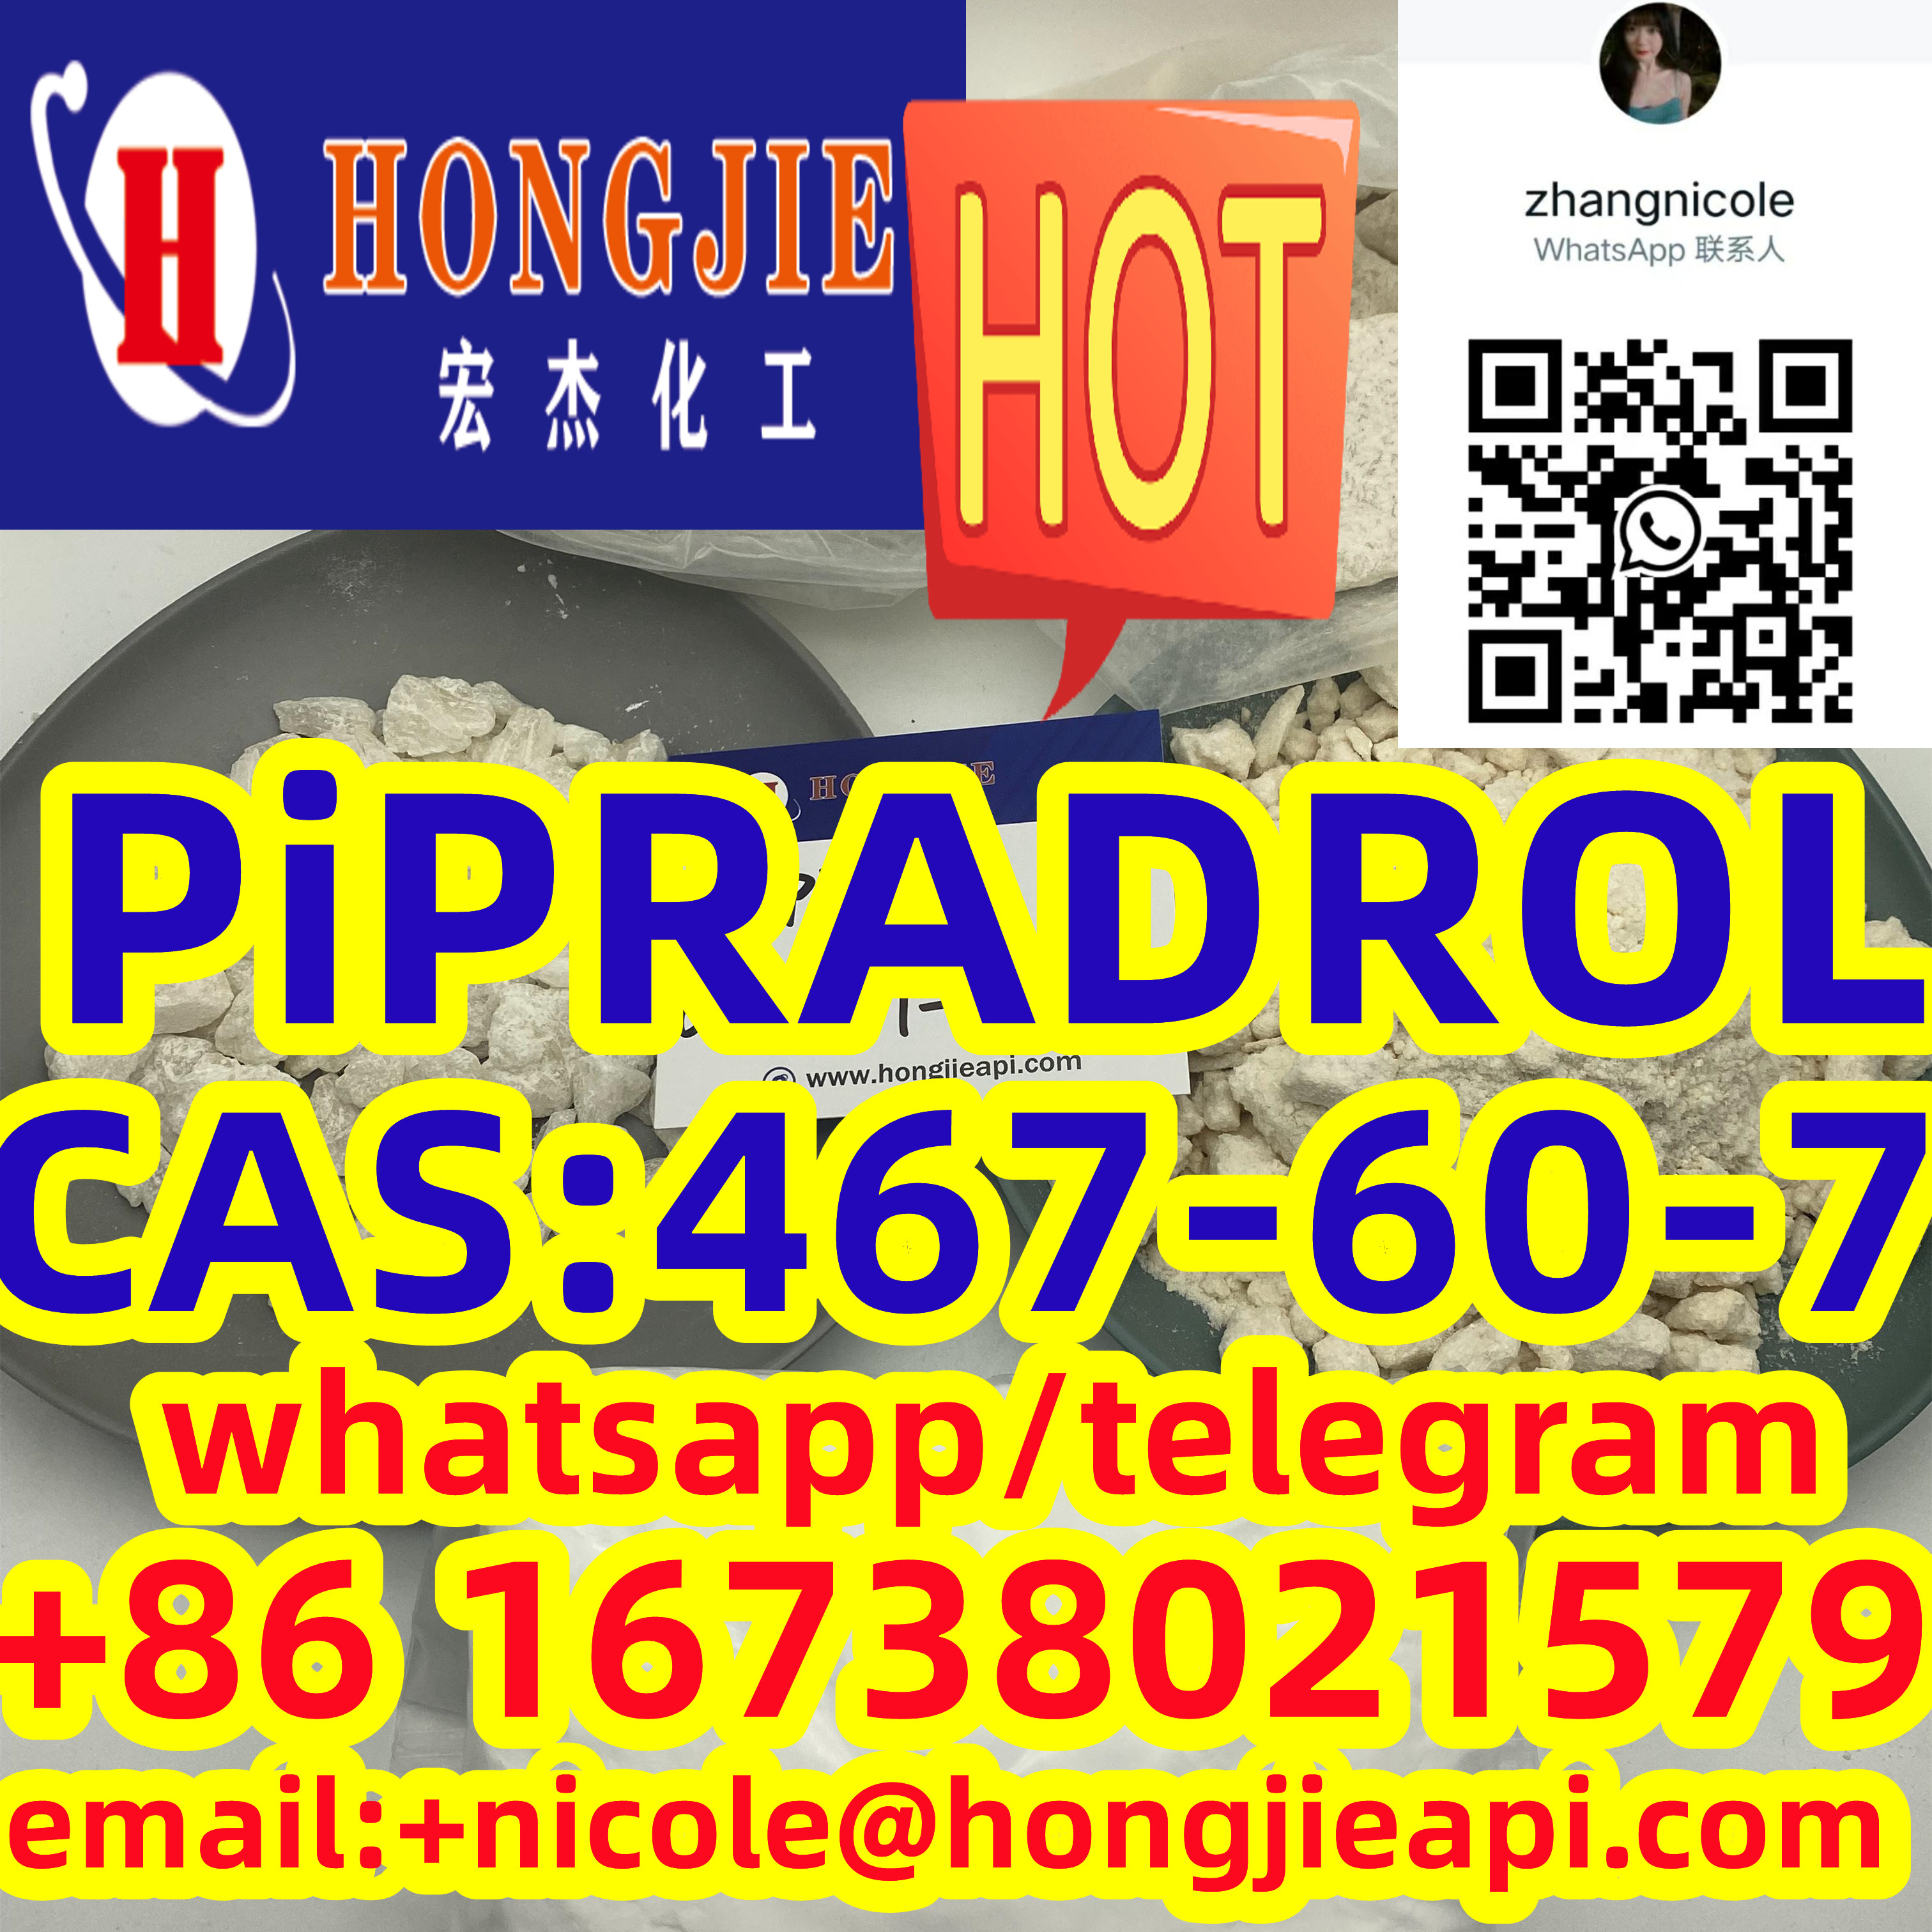 Low price PiPRADROL CAS:467-60-7